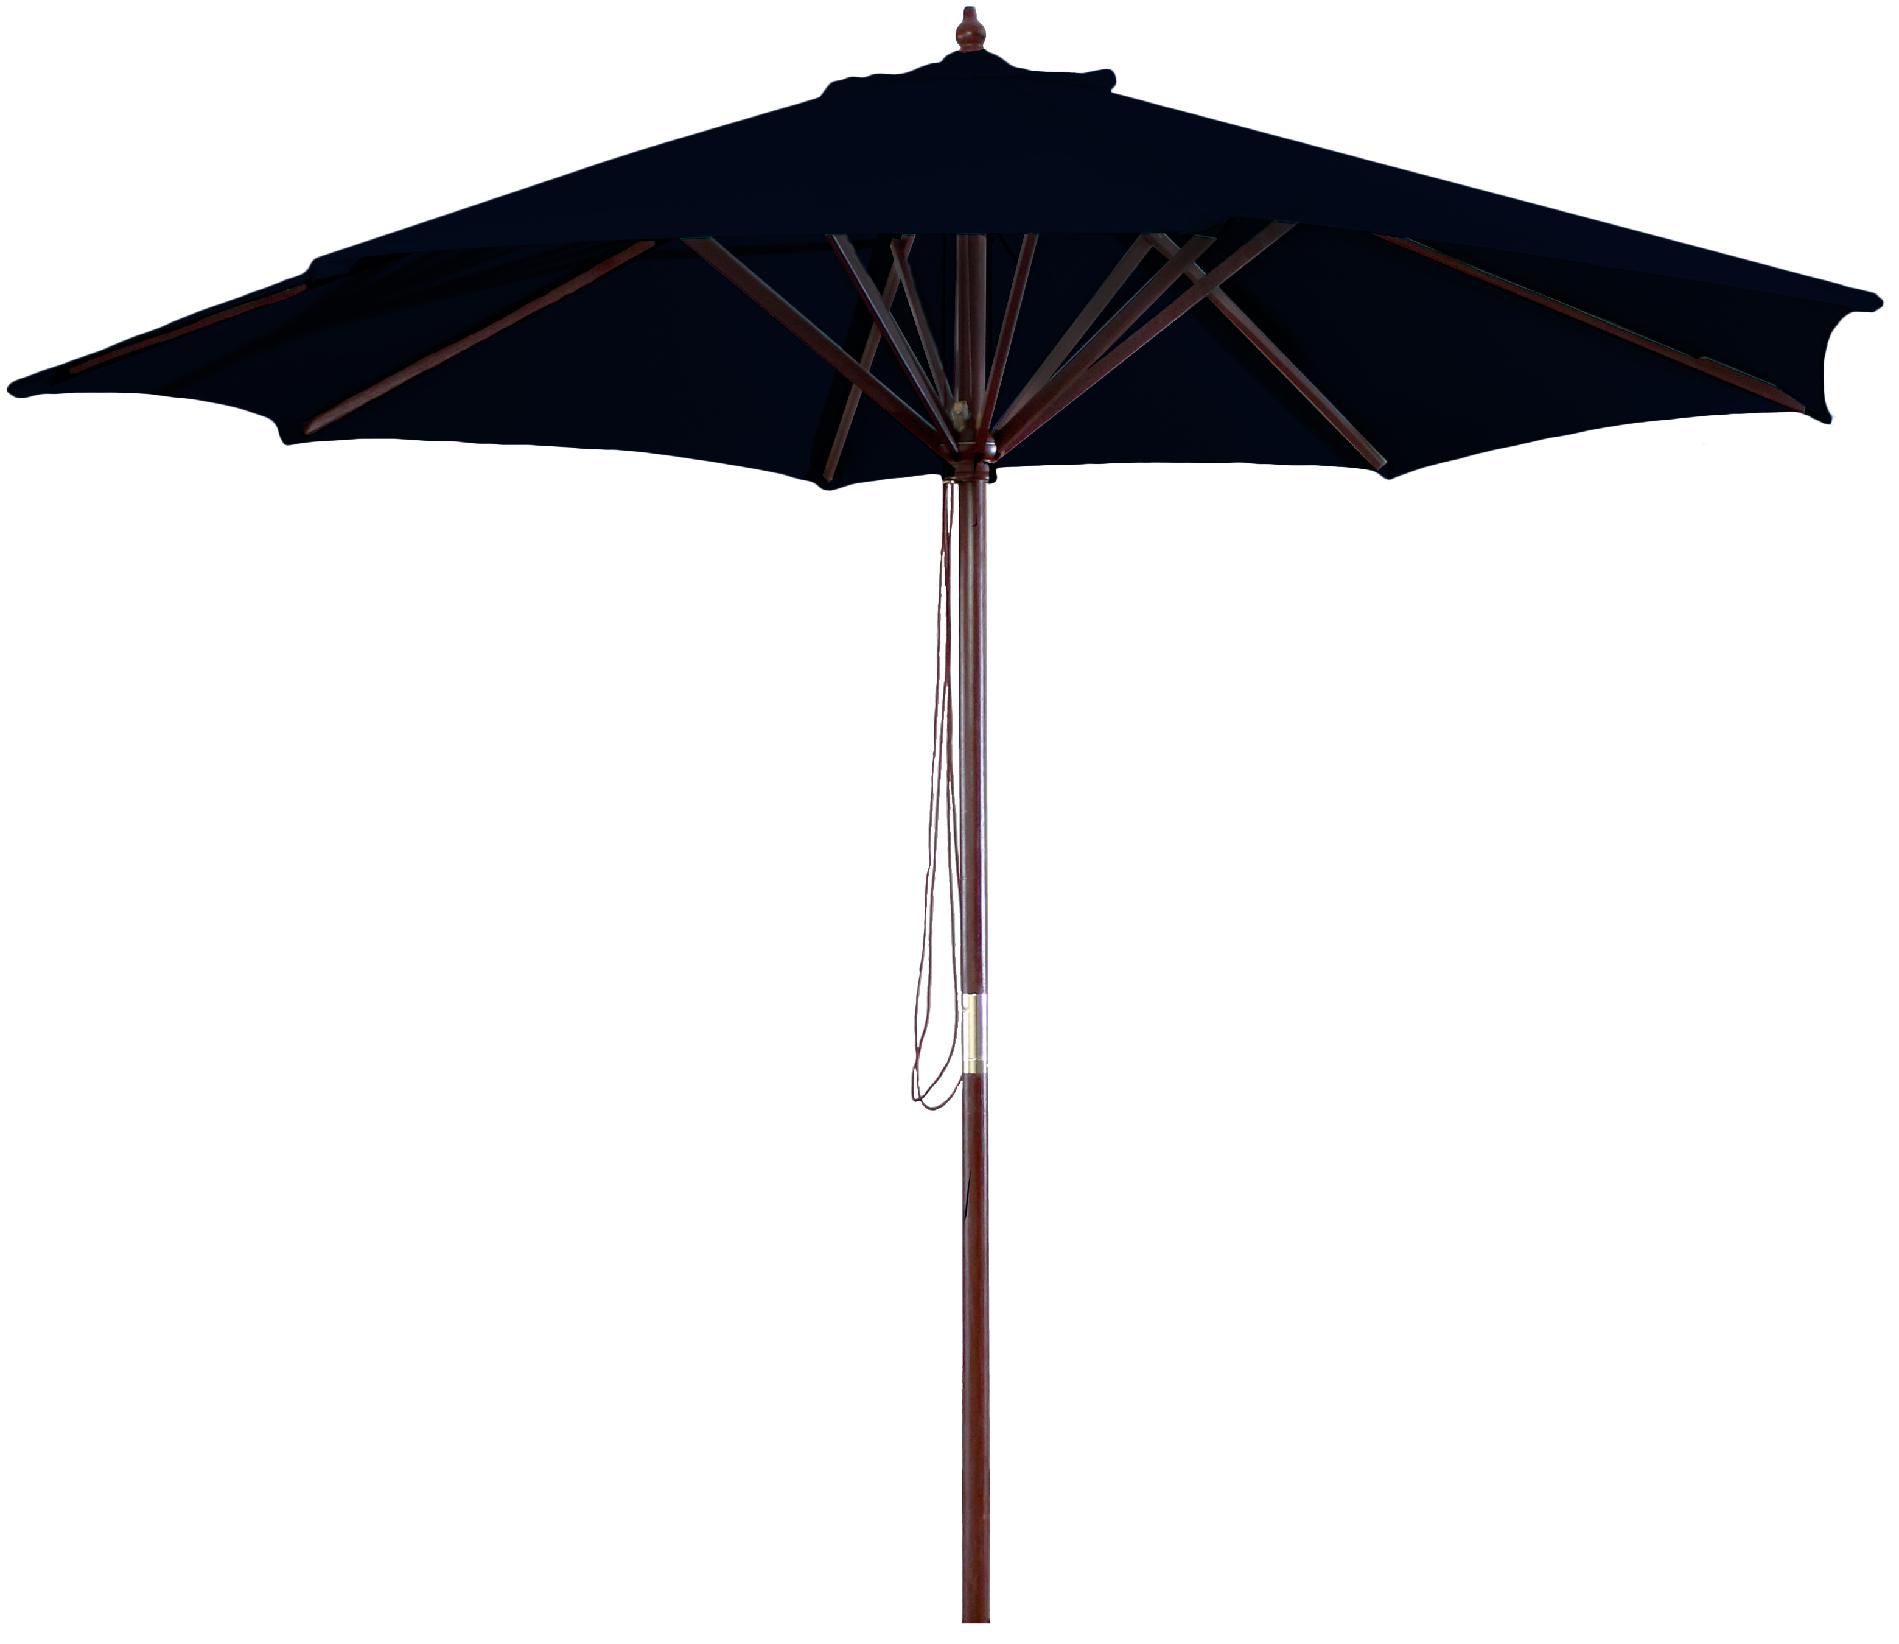 9' Wood Market Umbrella in Assorted colors